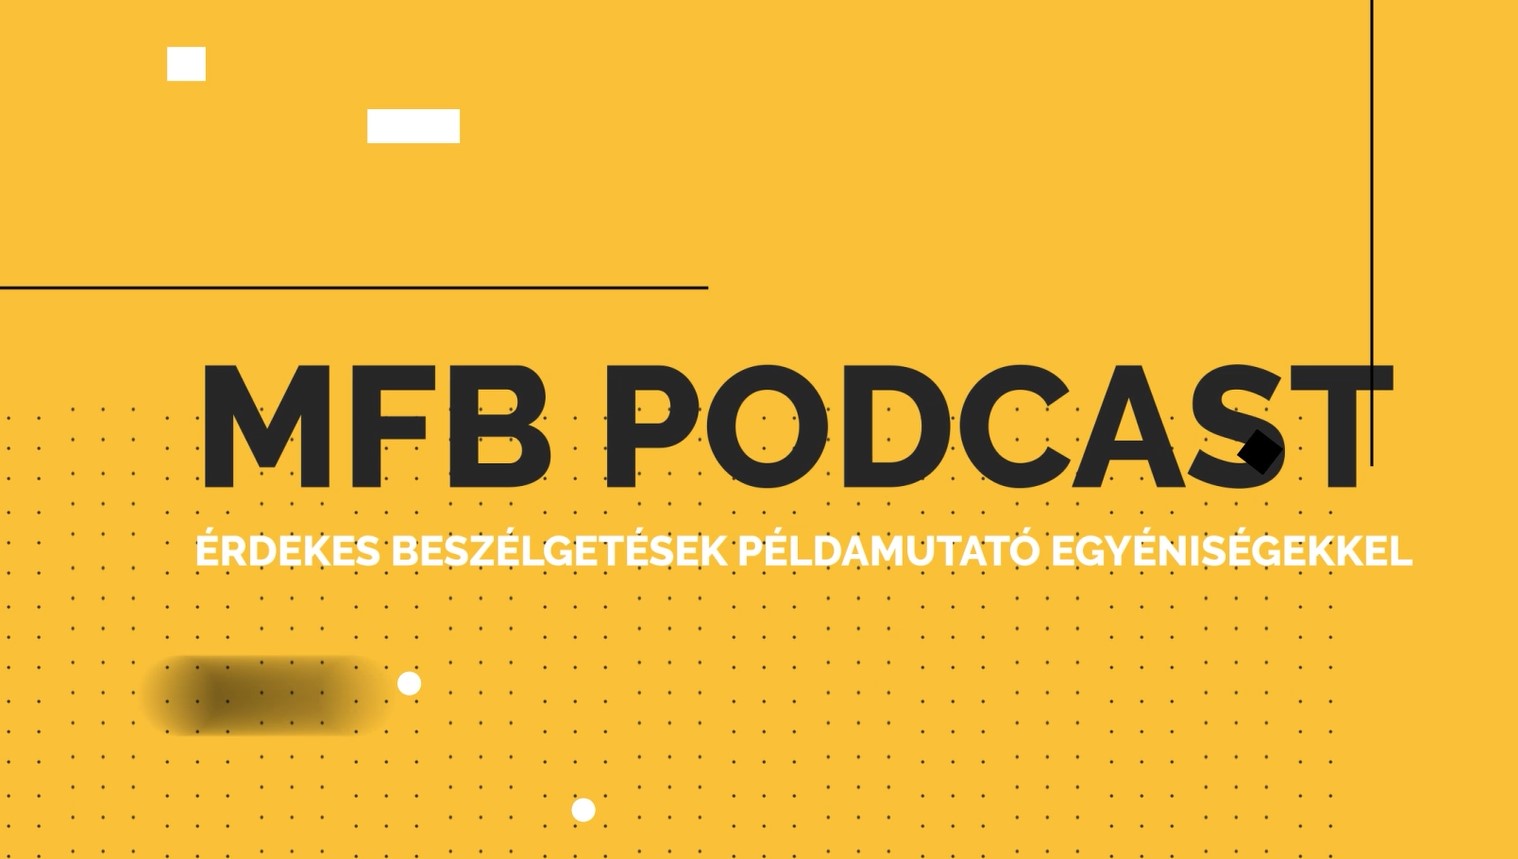 MFB Podcast – Beszélgetés Dr. Koók László biomérnökkel, a bioelektrokémia kutatásokról